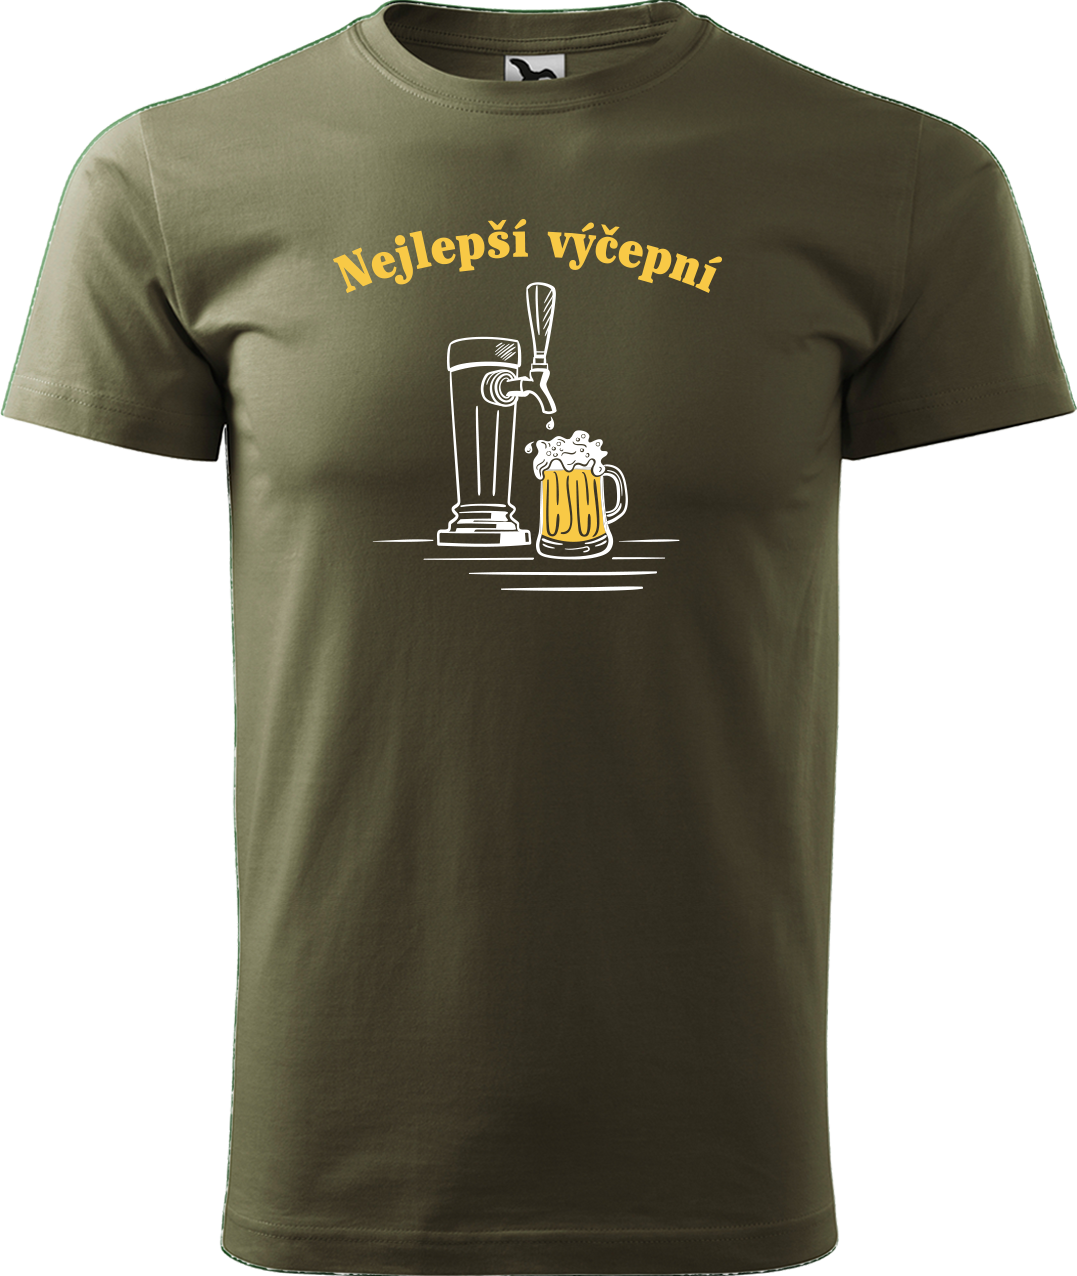 Pivní tričko - Nejlepší hospodskej Velikost: M, Barva: Military (69)